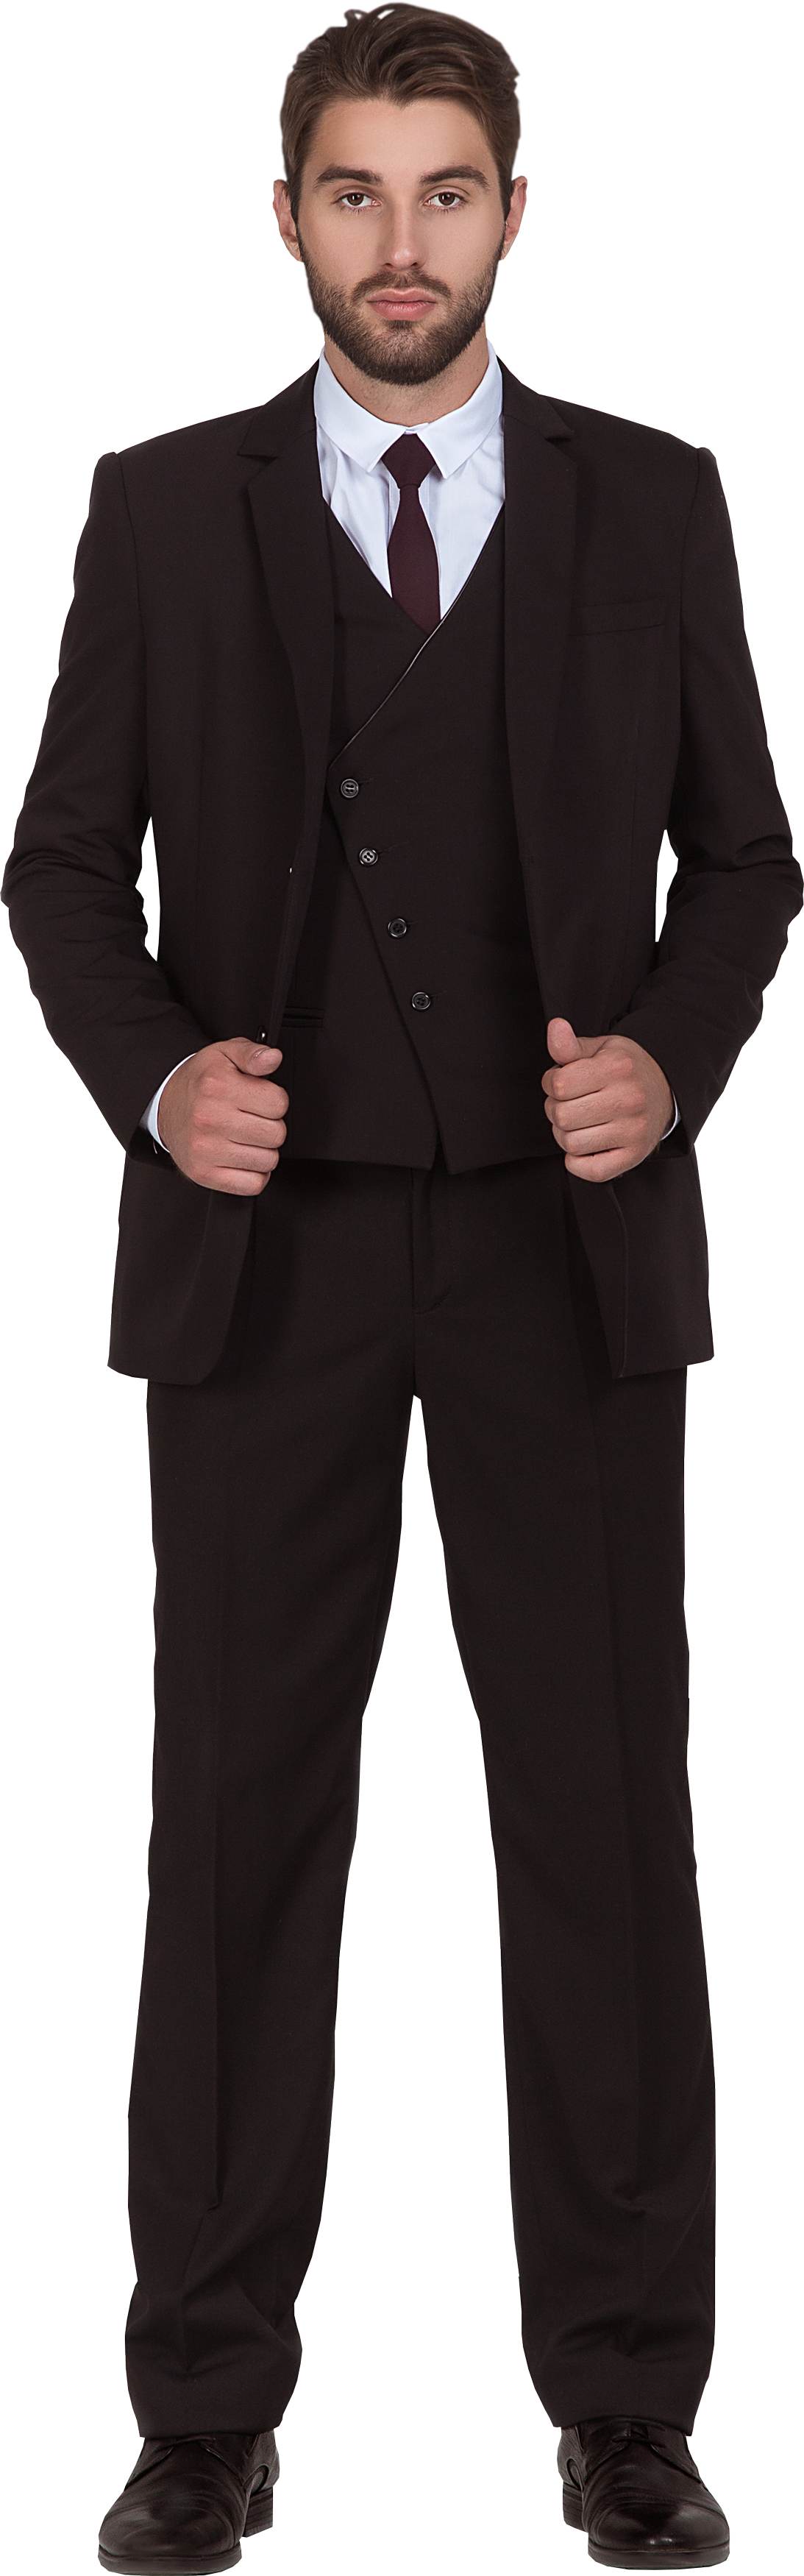 Комплект для администратора DALLAS - жакет / жилетка / брюки, мужской. 